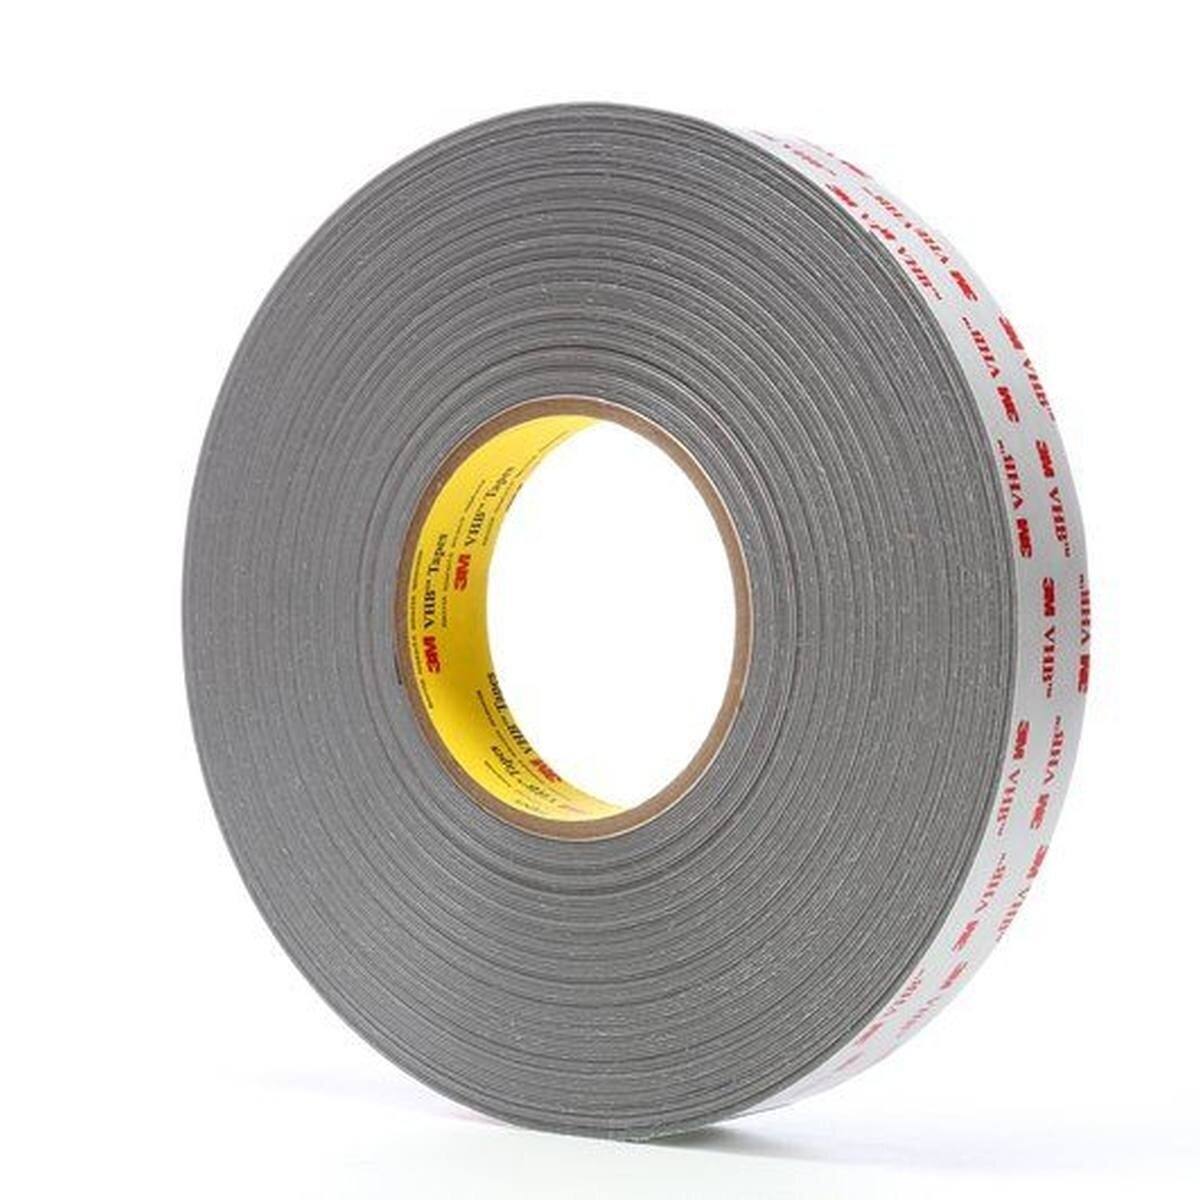 3M VHB adhesive tape 4936P, gray, 19 mm x 33 m, 0.6 mm